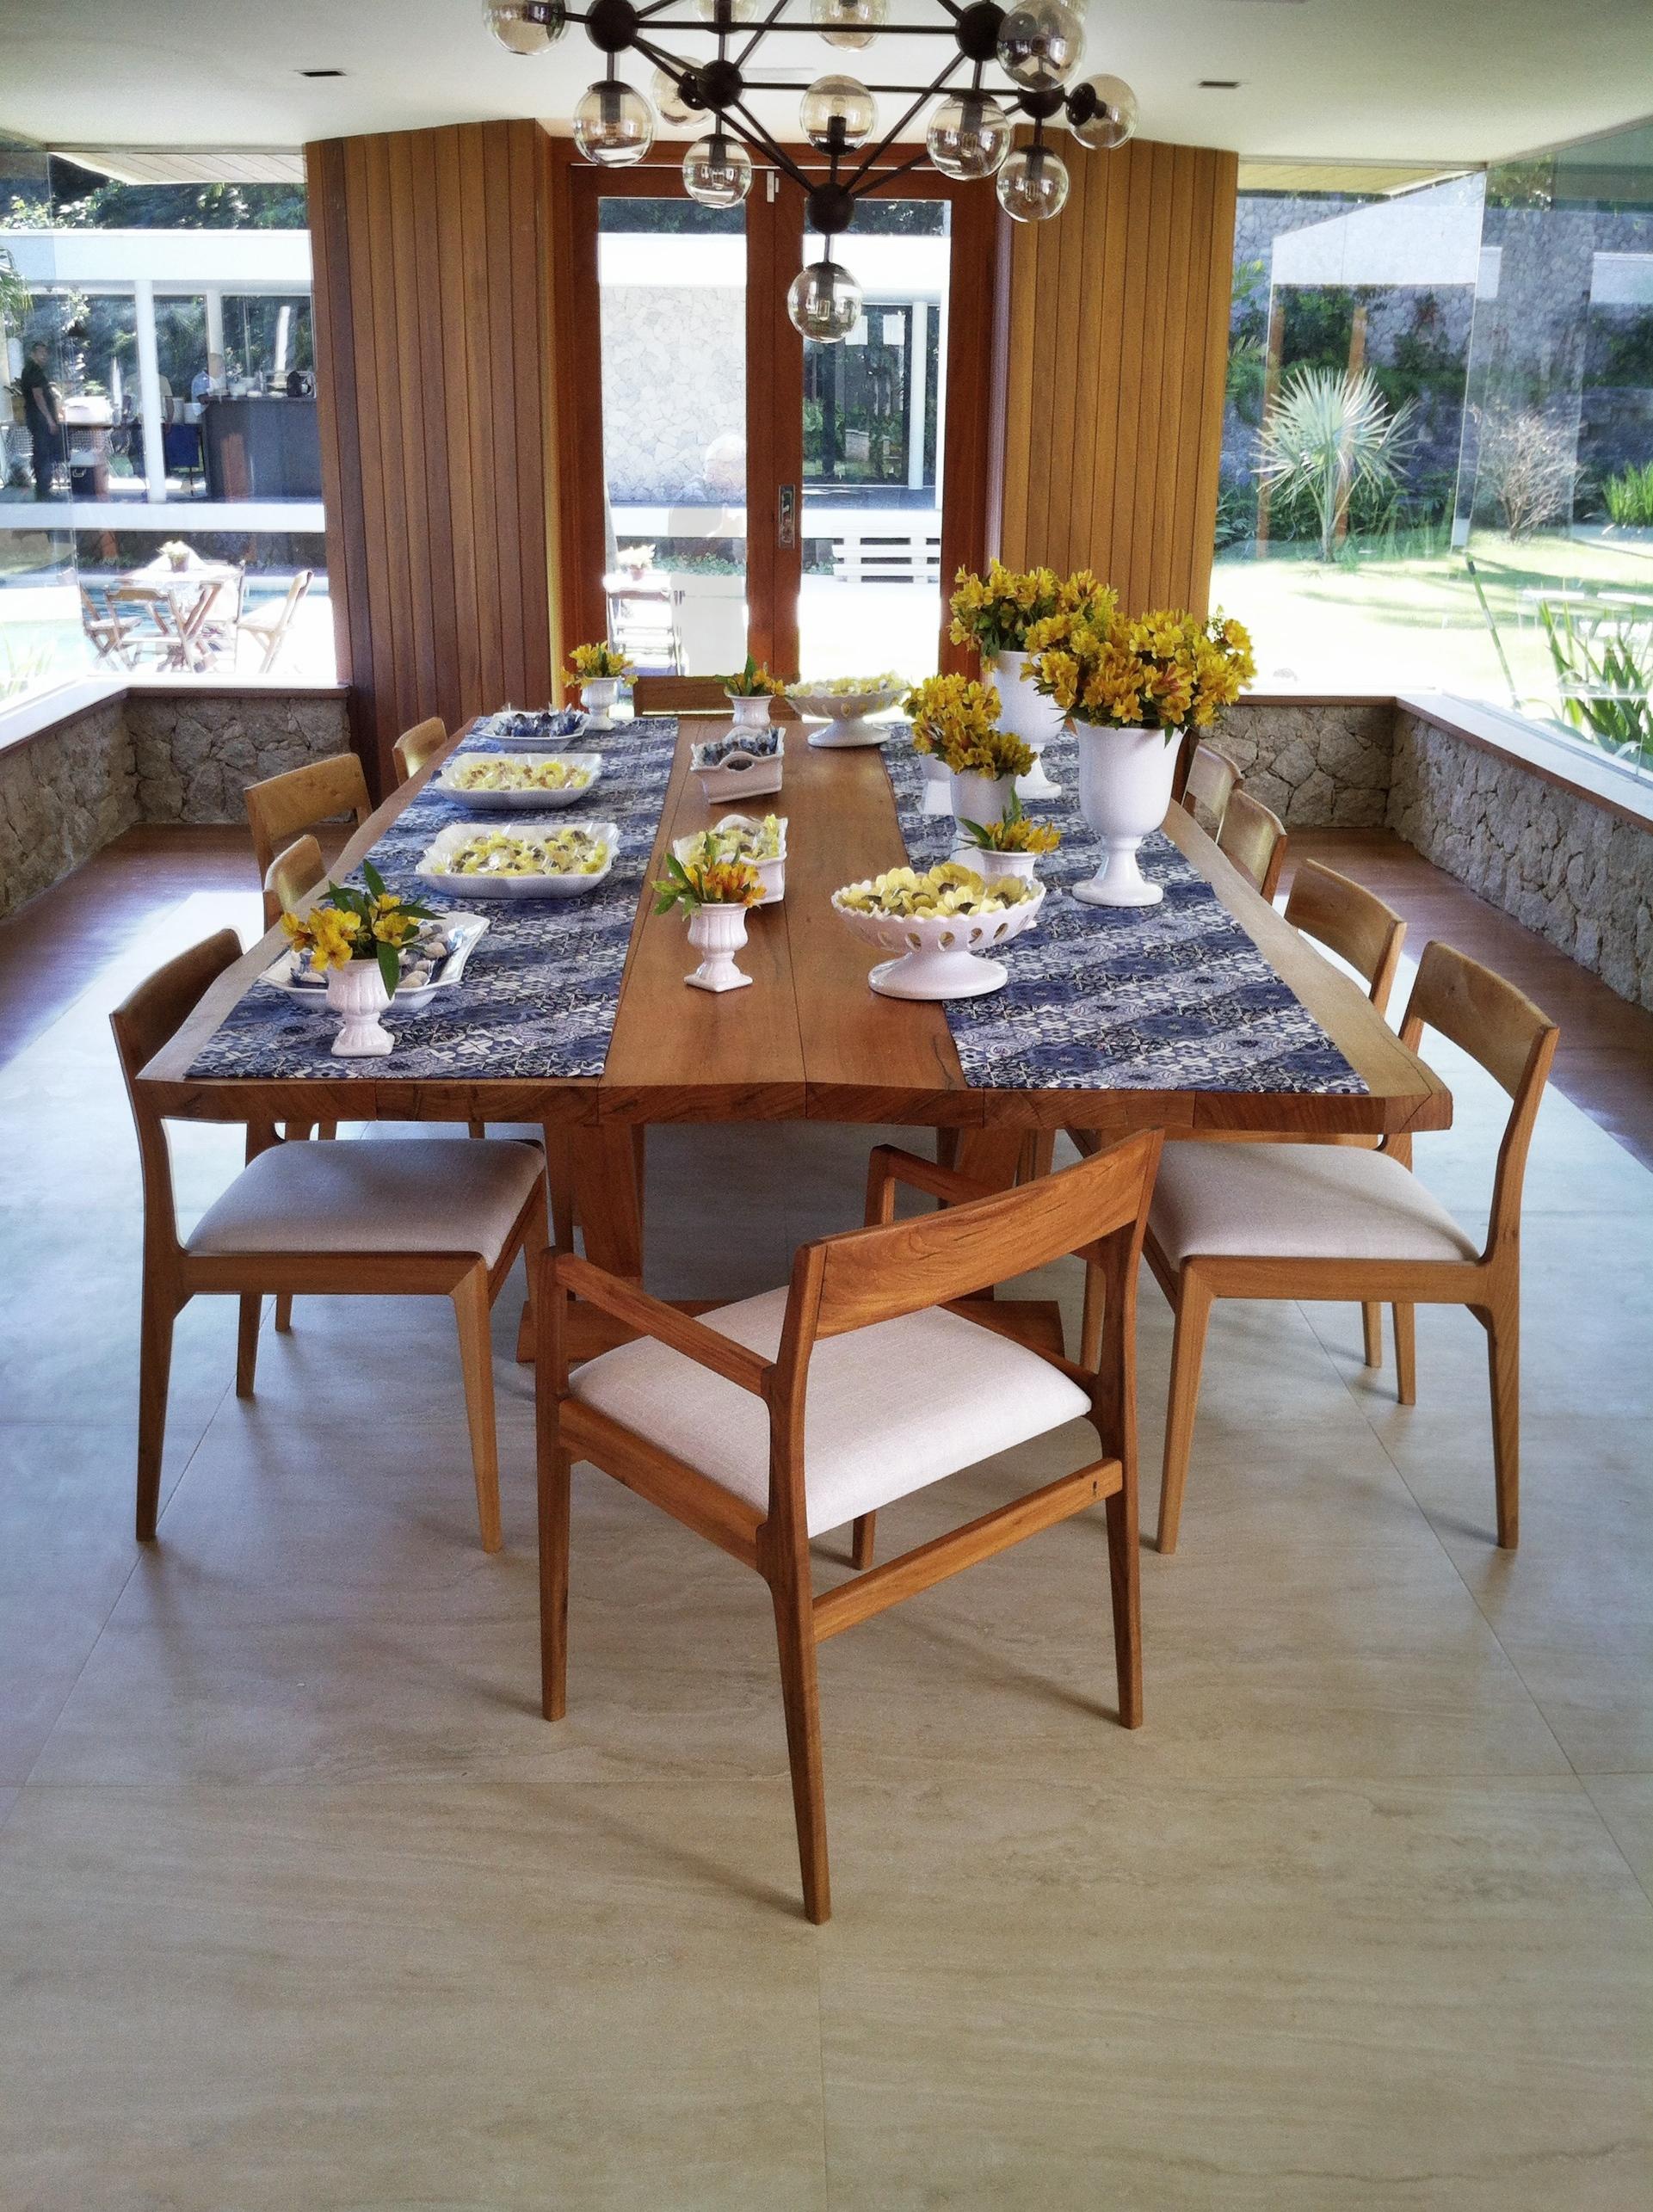 Table de salle à manger contemporaine fabriquée en bois dur tropical brésilien sélectionné. Design brésilien contemporain.

Cette table de salle à manger est dotée d'un plateau solide à abattre et d'une base solide assemblée avec des joints de bois